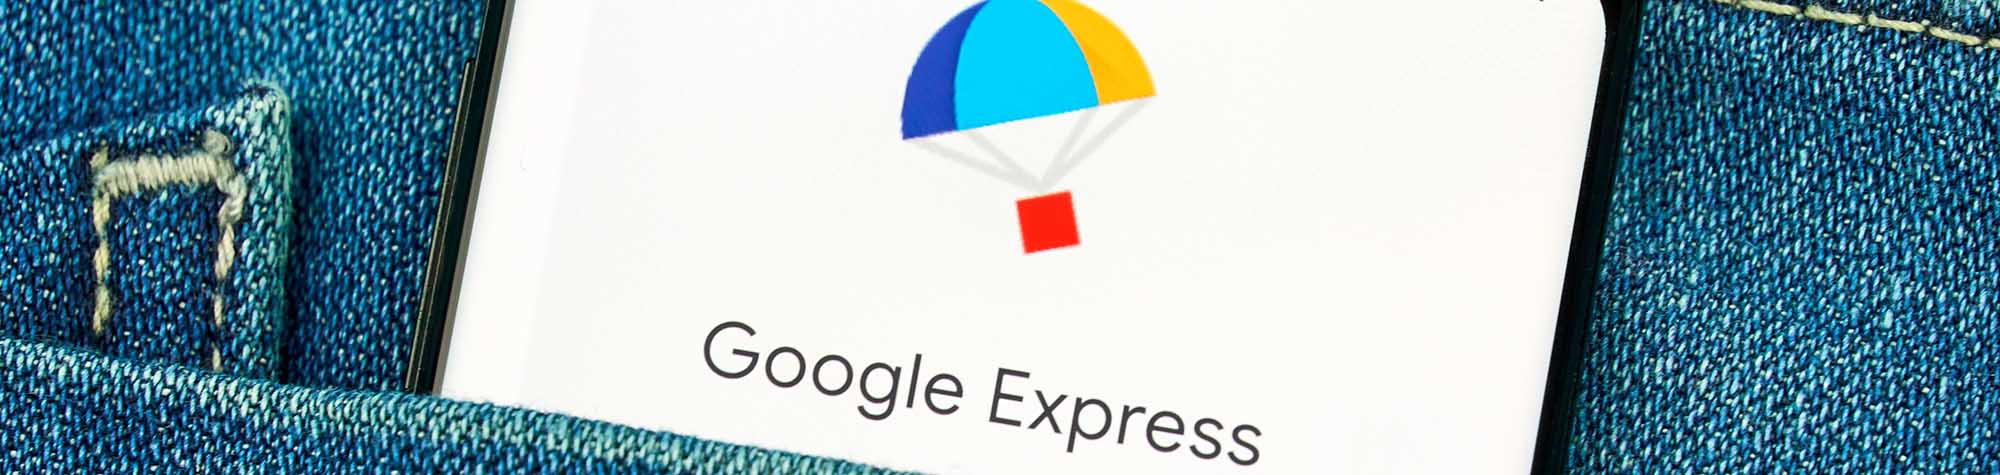 Google Express, el marketplace de Google, cada vez más cerca